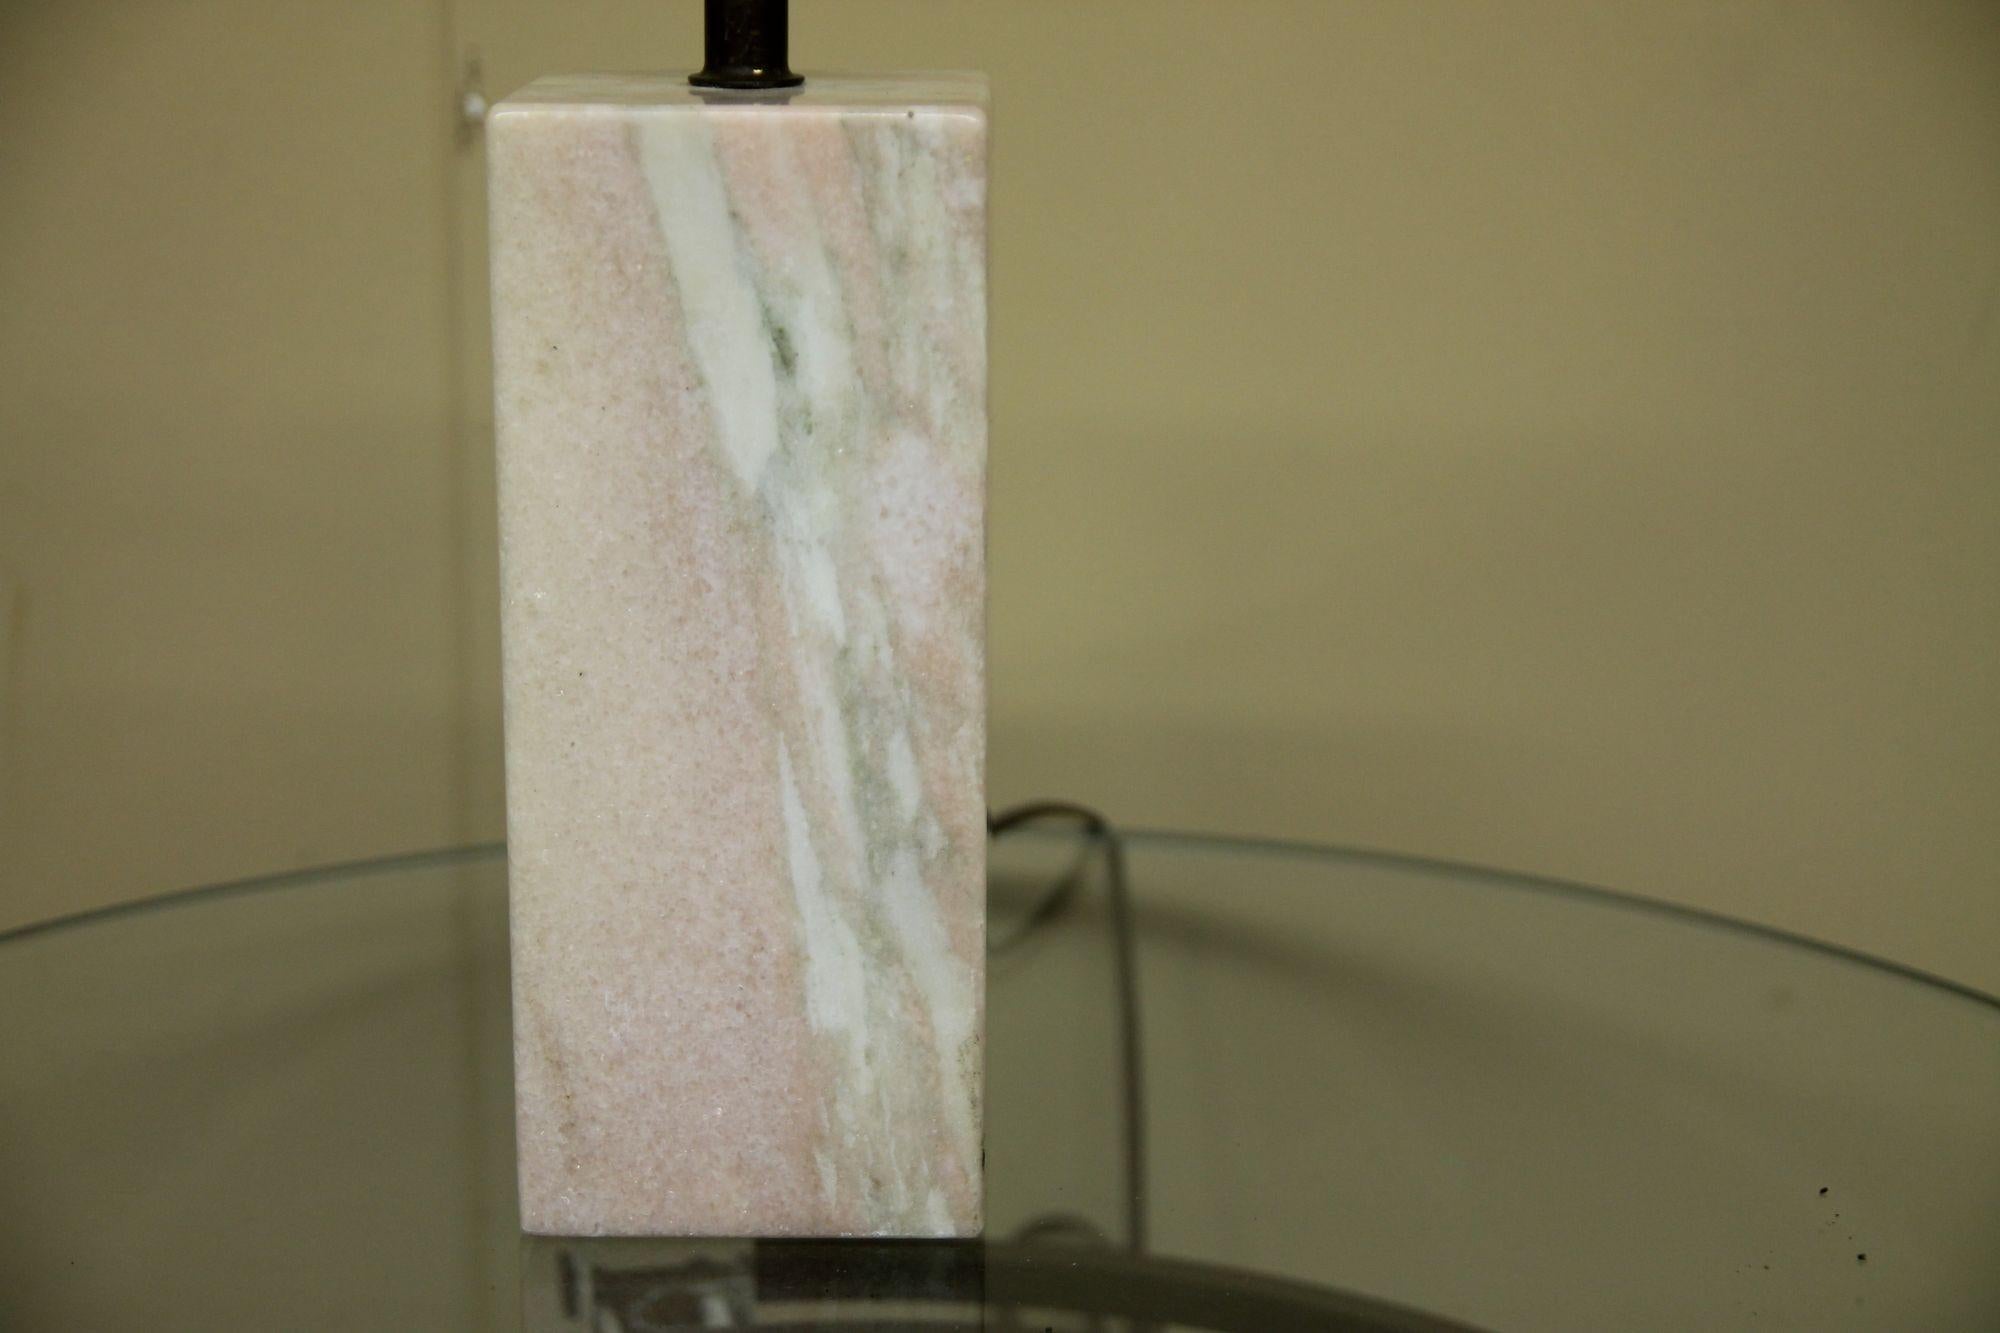 Nous avons le plaisir de vous proposer cette lampe de table en marbre rose. Cette lampe de petite taille est en bon état. La lampe sera parfaite avec un abat-jour de couleur claire.